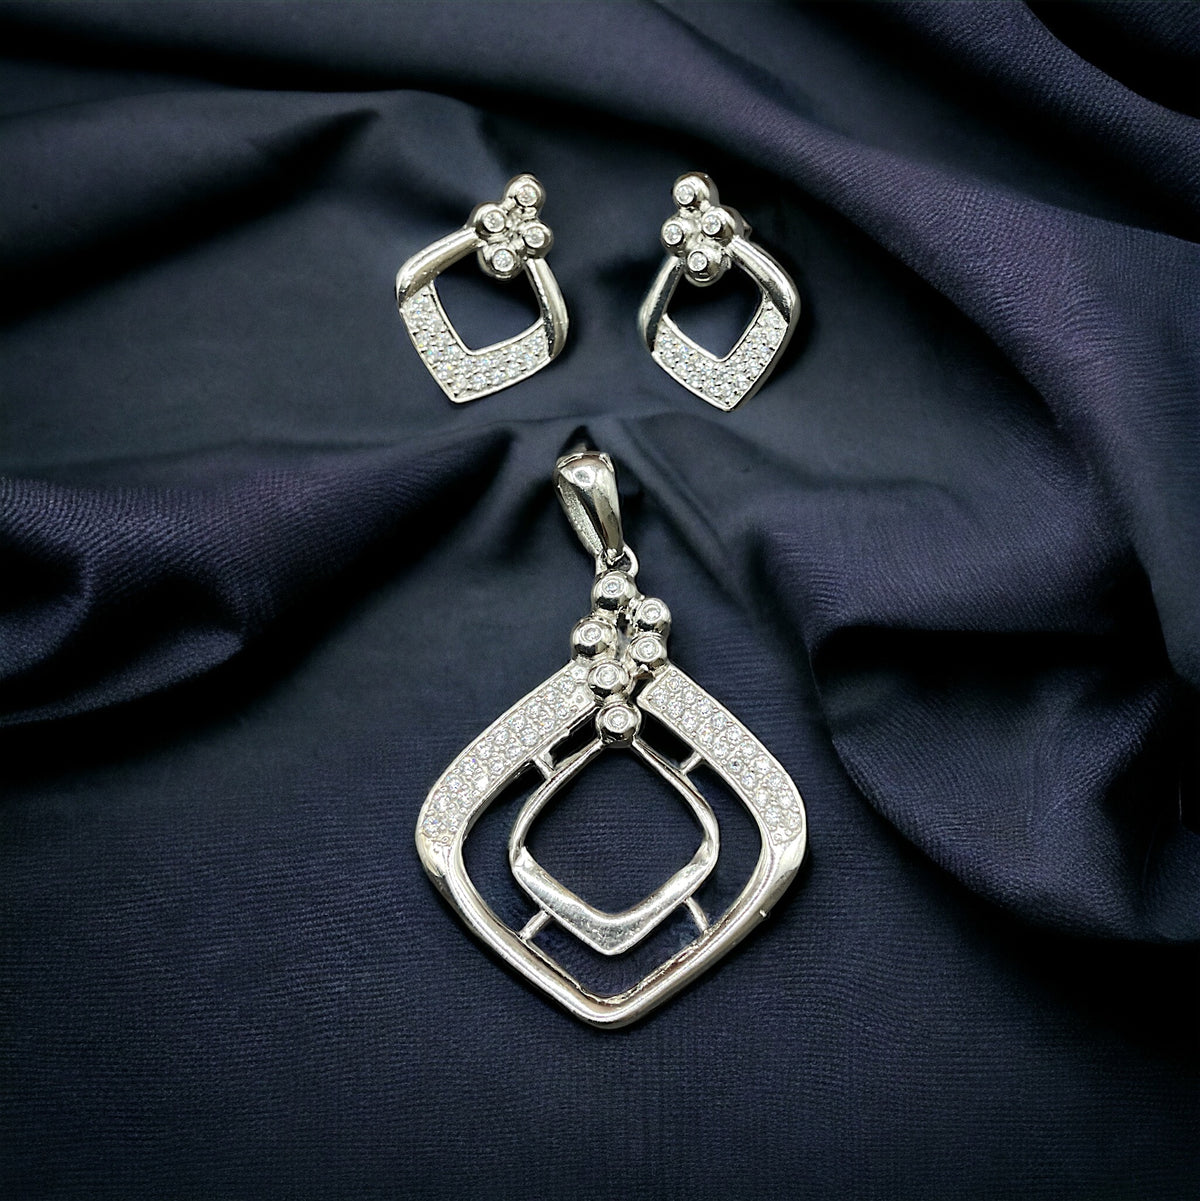 Silver Sparkler Diamond Earrings & Pendant Set